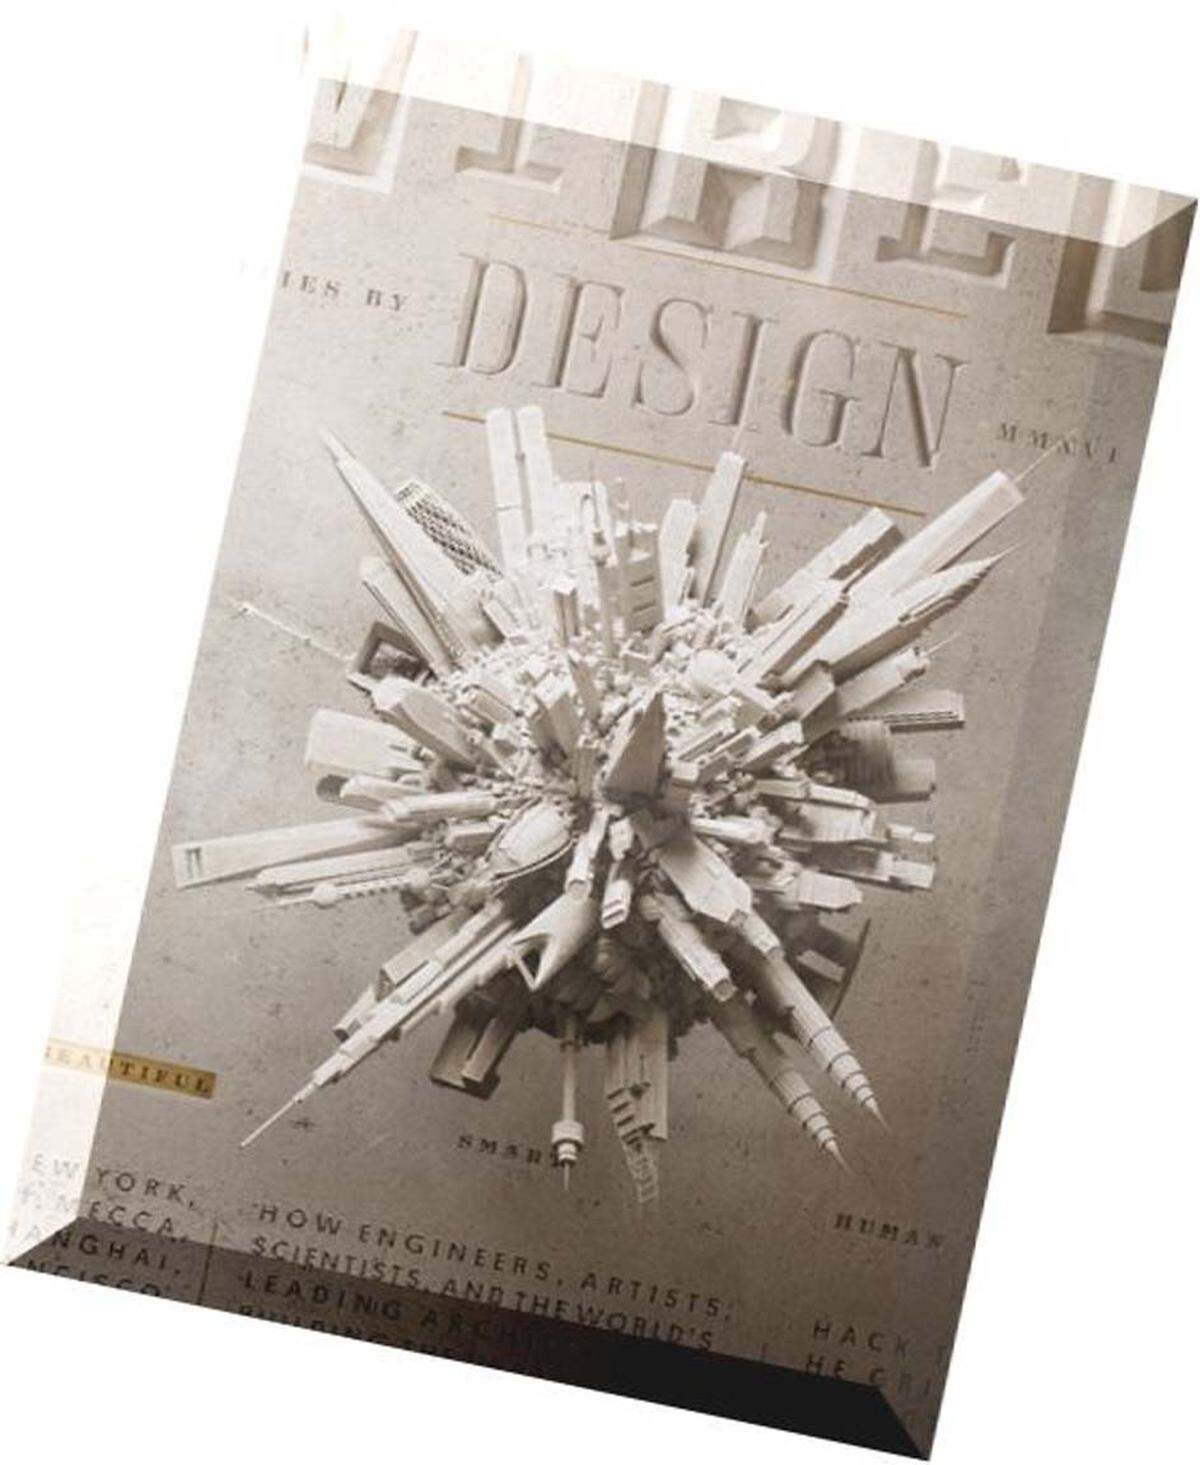 "Best Style and Design Cover" wurde das Oktober-Cover von Wired, gestaltet von Patrick Clair.